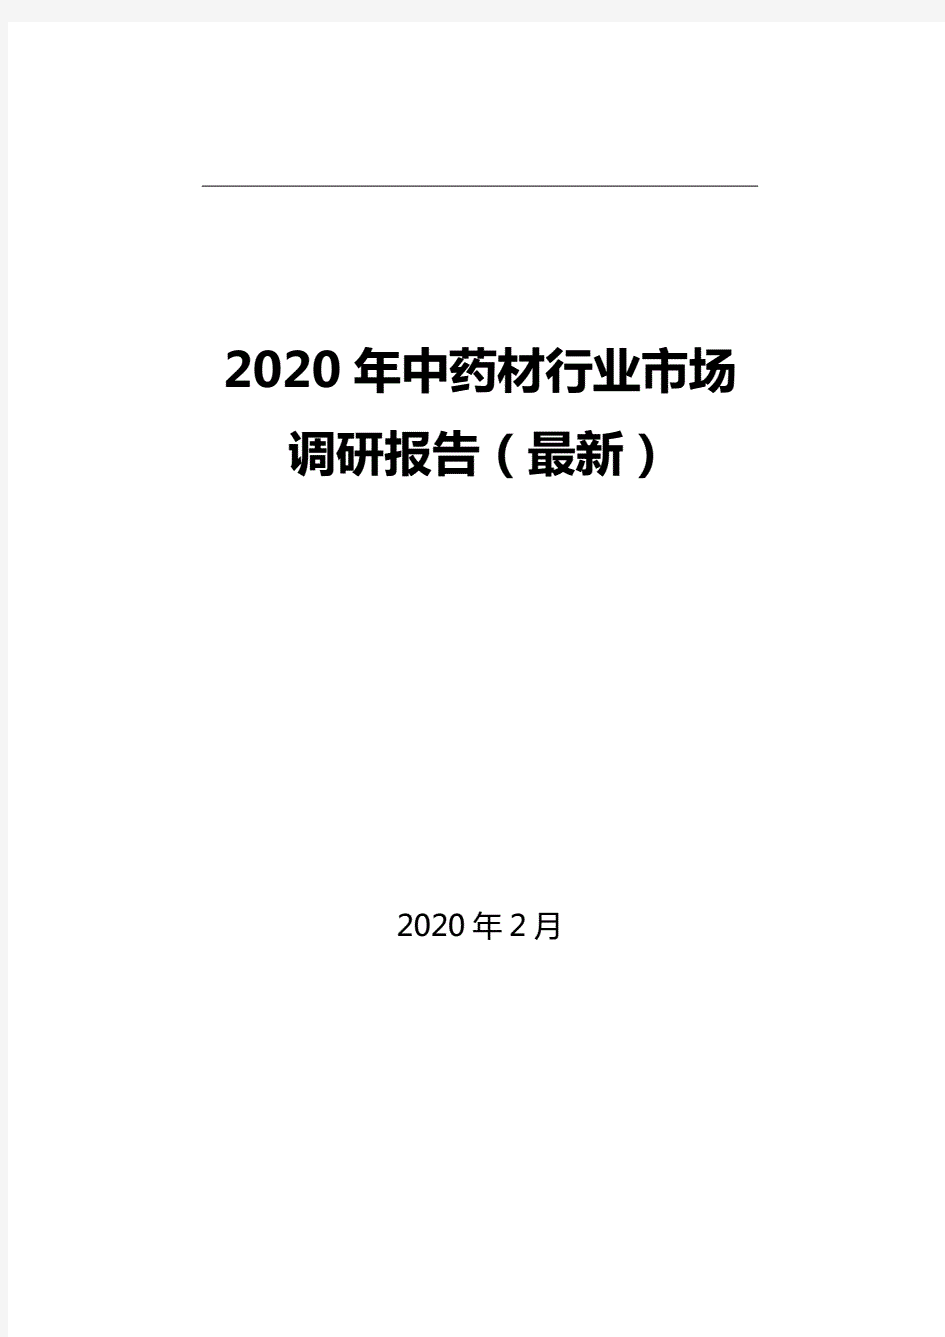 2020年中药材行业市场调研报告(最新)